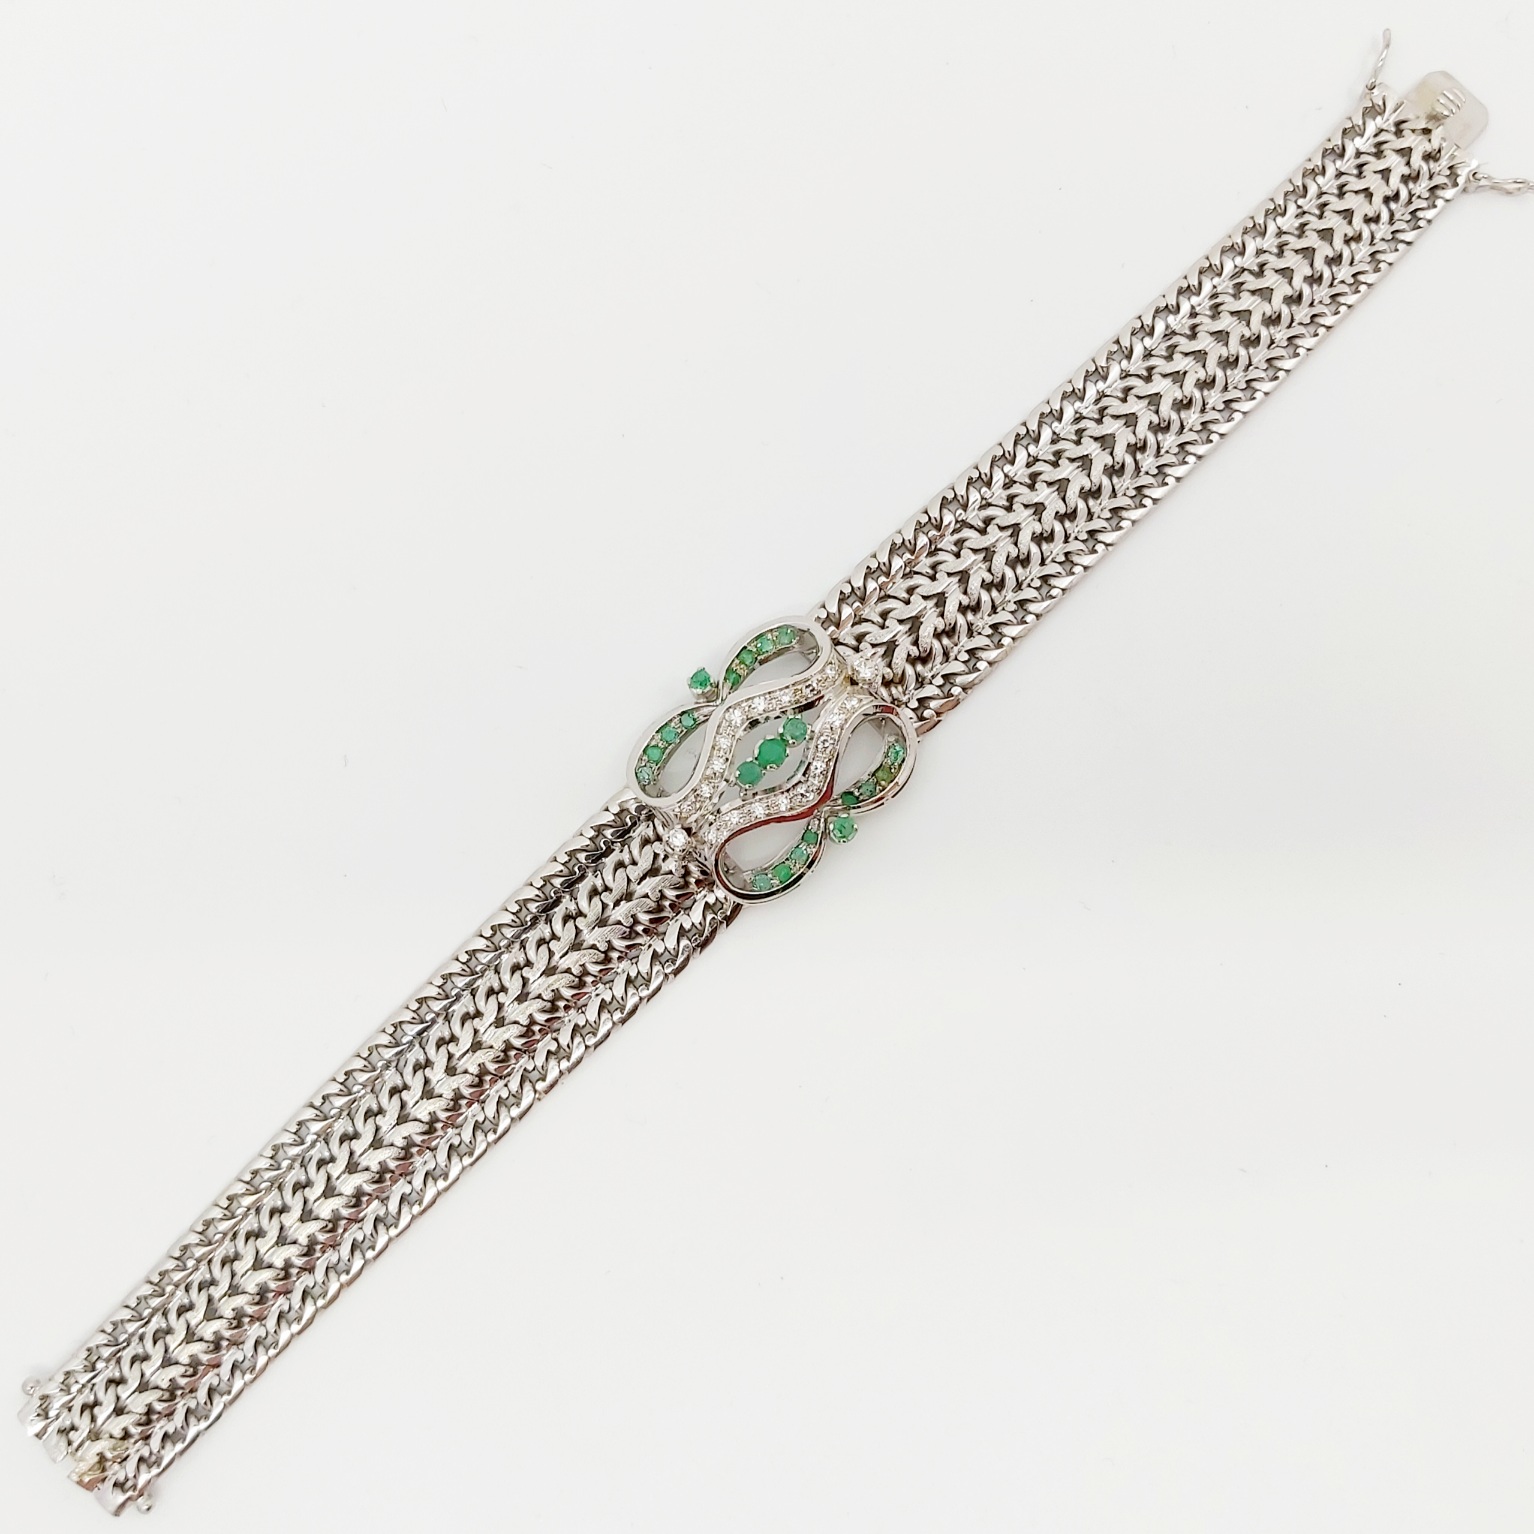 1 Armband 750/- mit Diamanten und Smaragden, 18,8 cm, 50,8 g